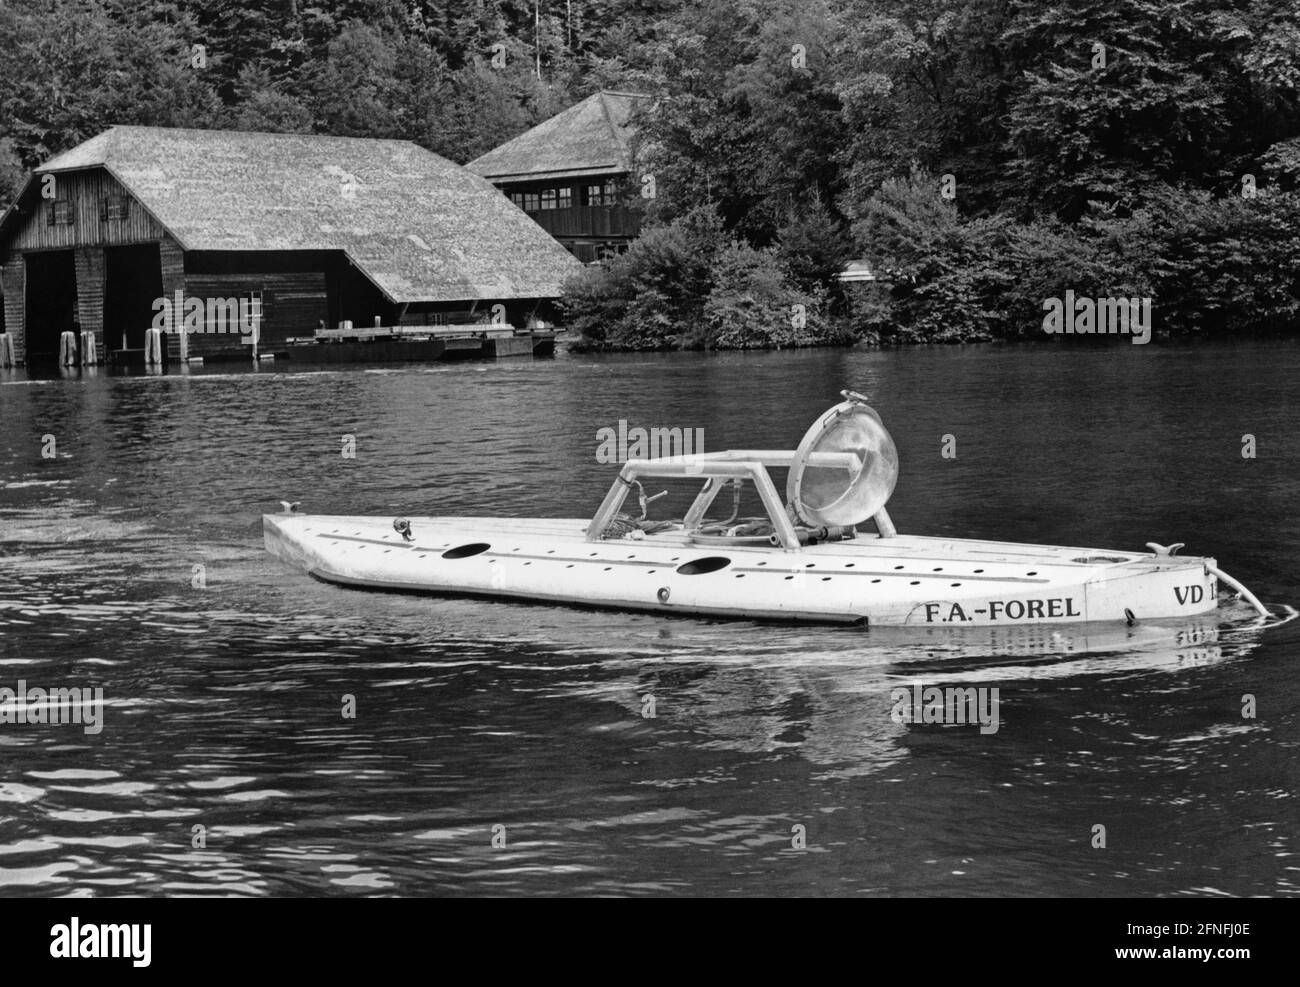 'Das U-Boot ''F.A. Forel'' des Schweizer Forschers Jacques Piccard auf dem Königssee. Die ''F.A. Forel'' wurde zur Erforschung der Fauna in Binnengewässern eingesetzt. [Automatisierte Übersetzung]' Stockfoto